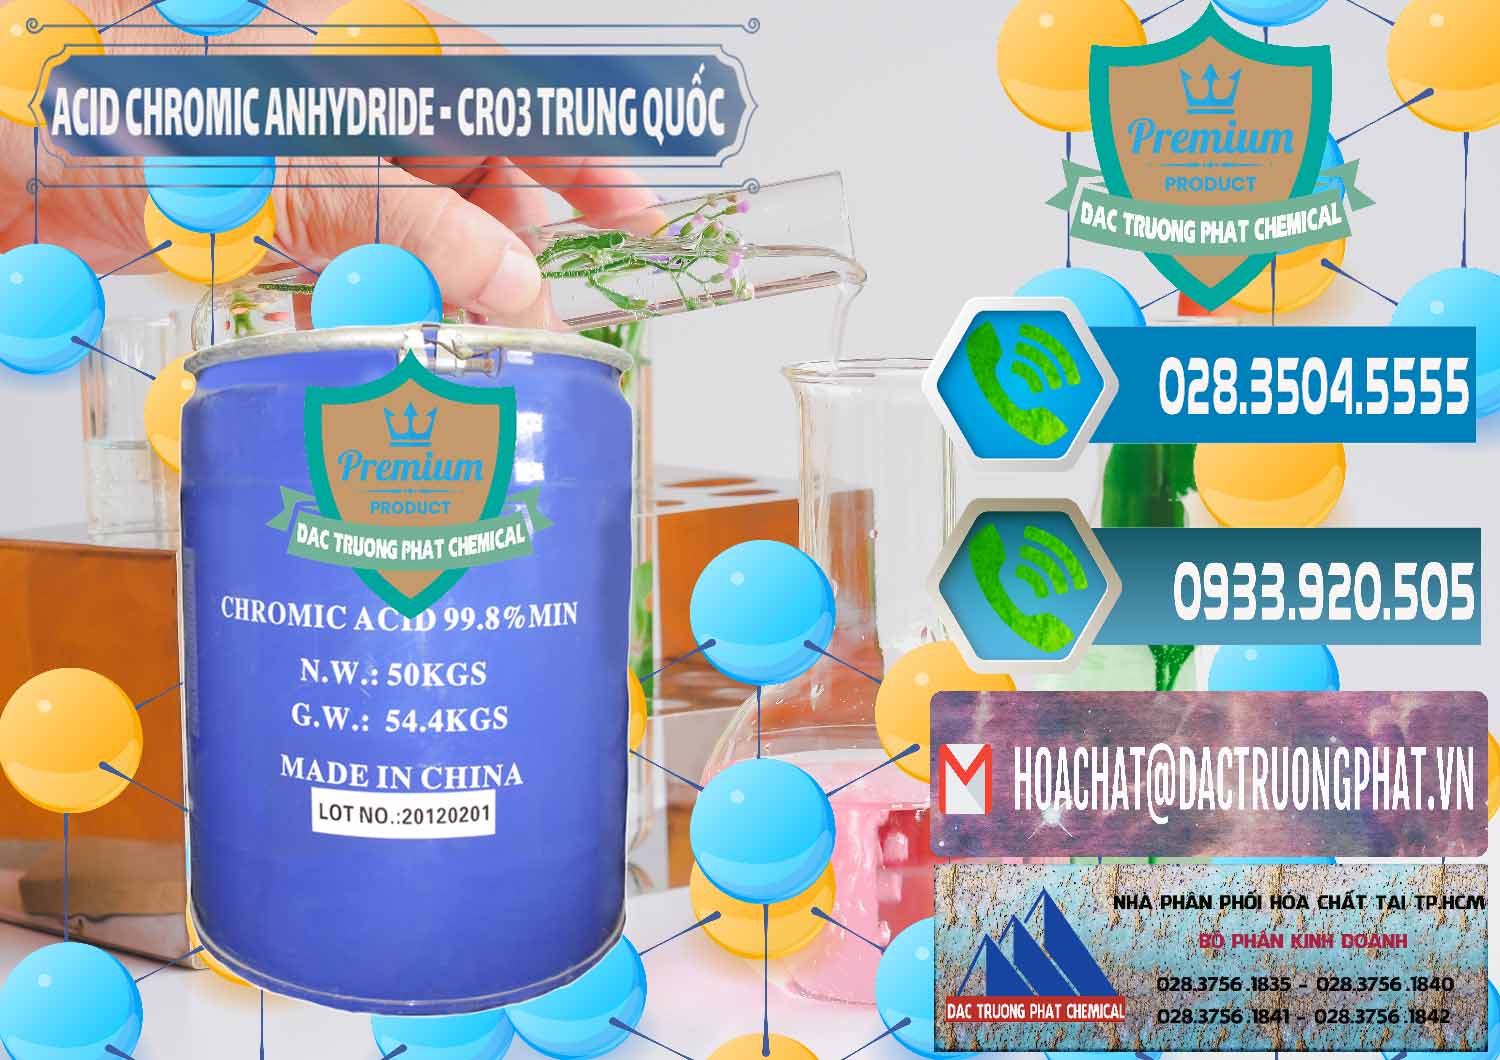 Đơn vị chuyên bán - cung ứng Acid Chromic Anhydride - Cromic CRO3 Trung Quốc China - 0007 - Cty chuyên cung ứng _ phân phối hóa chất tại TP.HCM - congtyhoachat.net